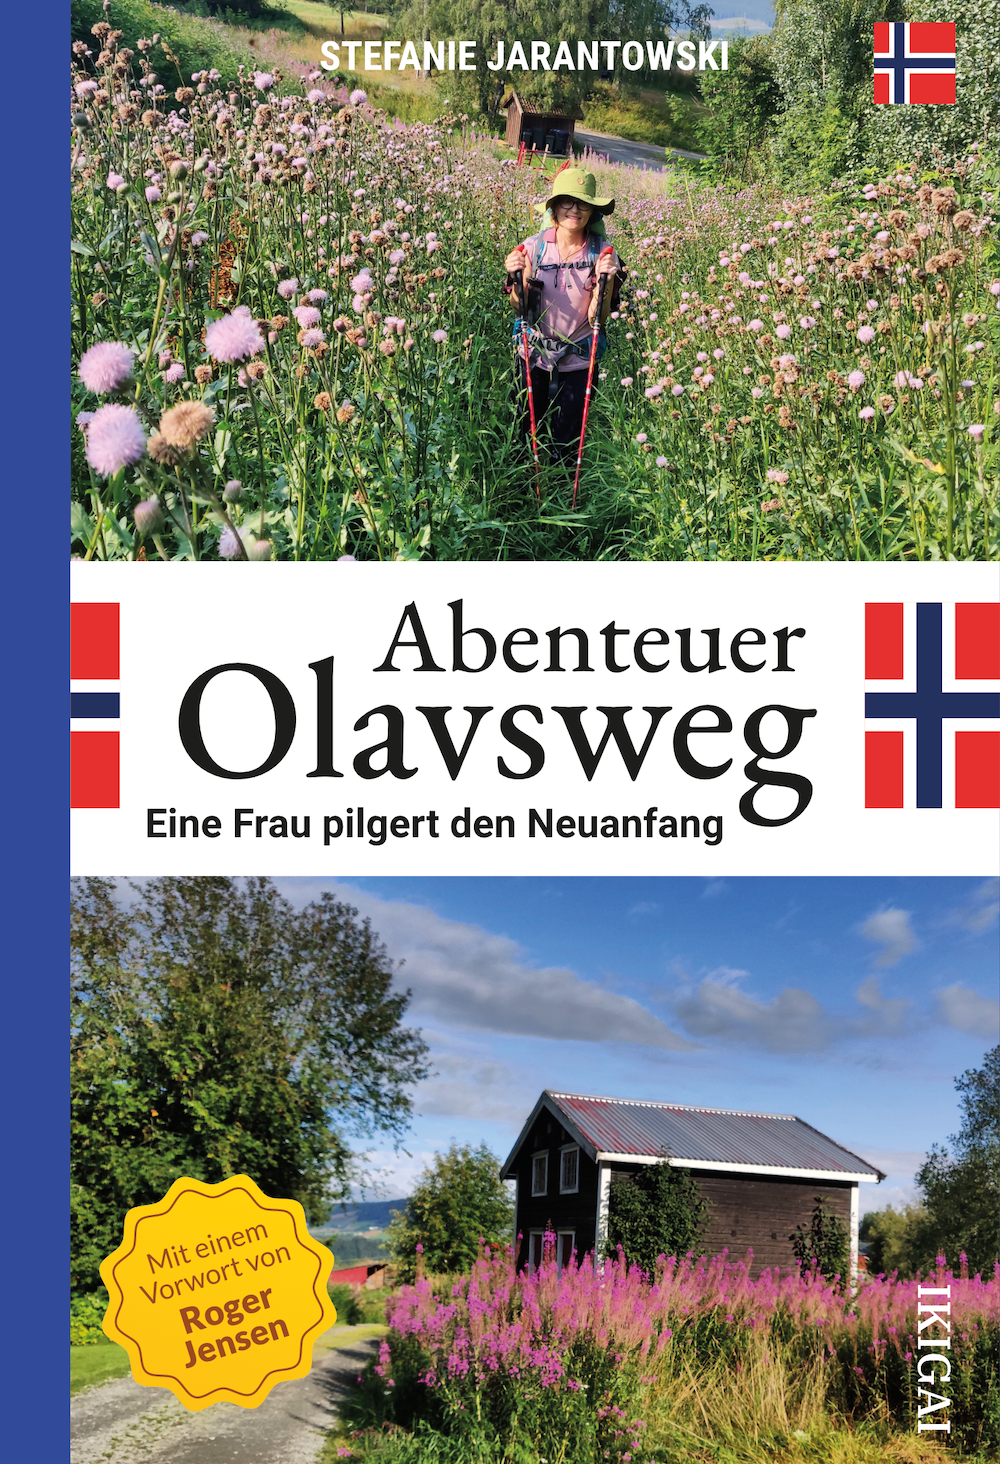 Abenteuer Olavsweg - Eine Frau pilgert den Neuanfang